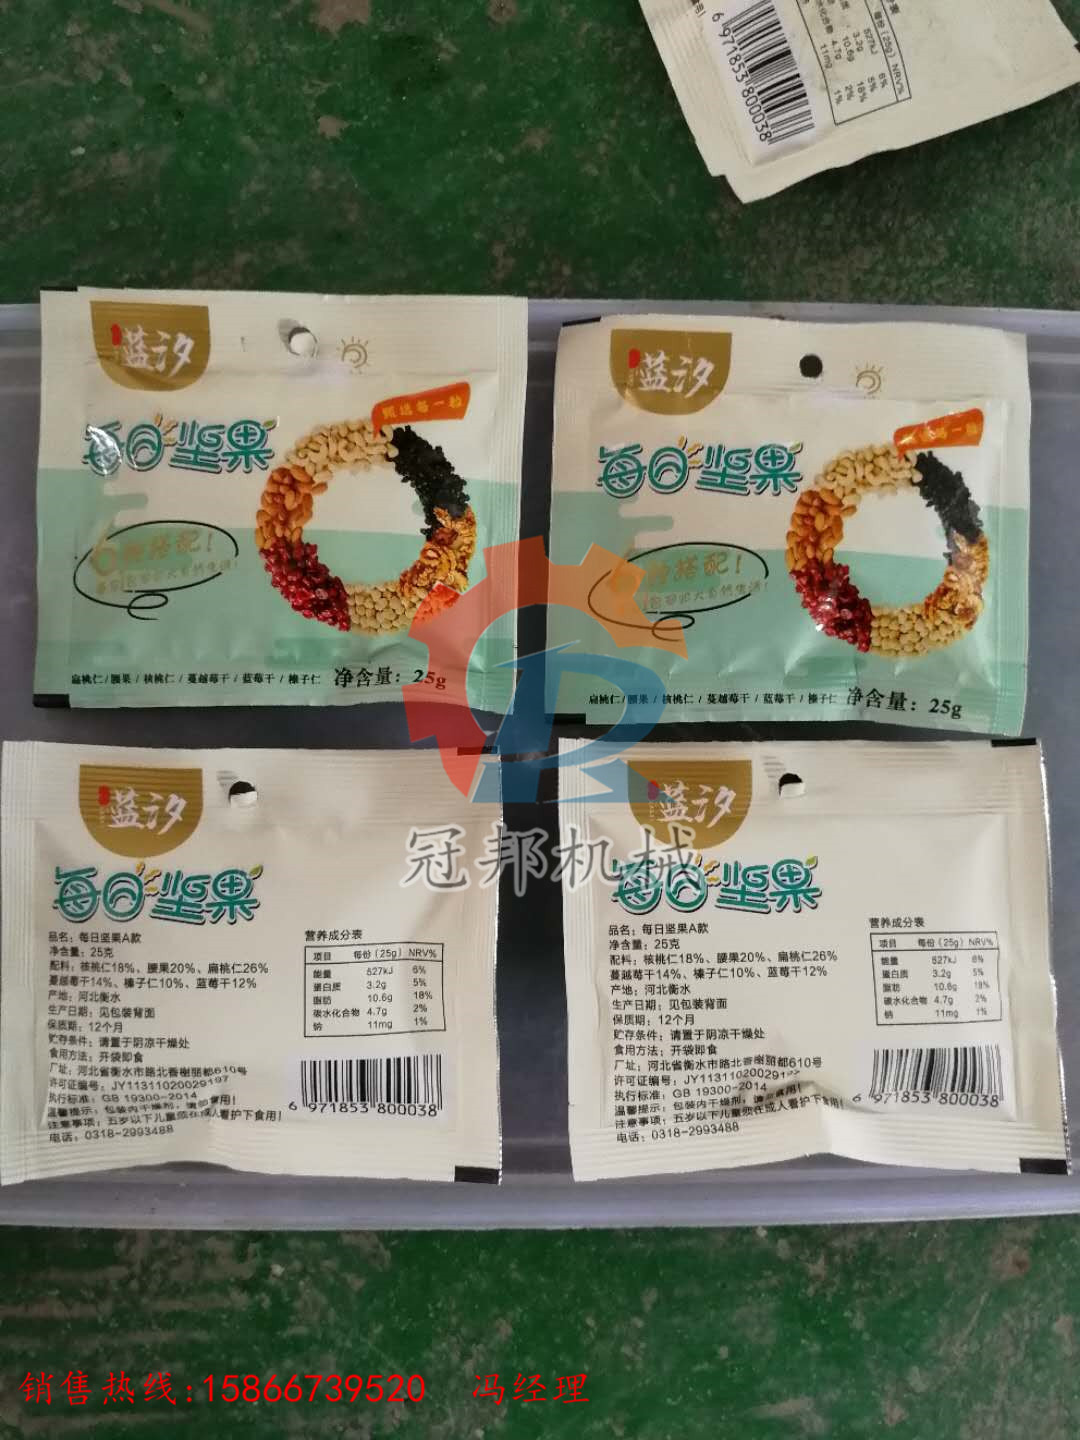 供应济南潍坊  坚果包装机  全自动颗粒包装机  混合坚果包装机示例图5